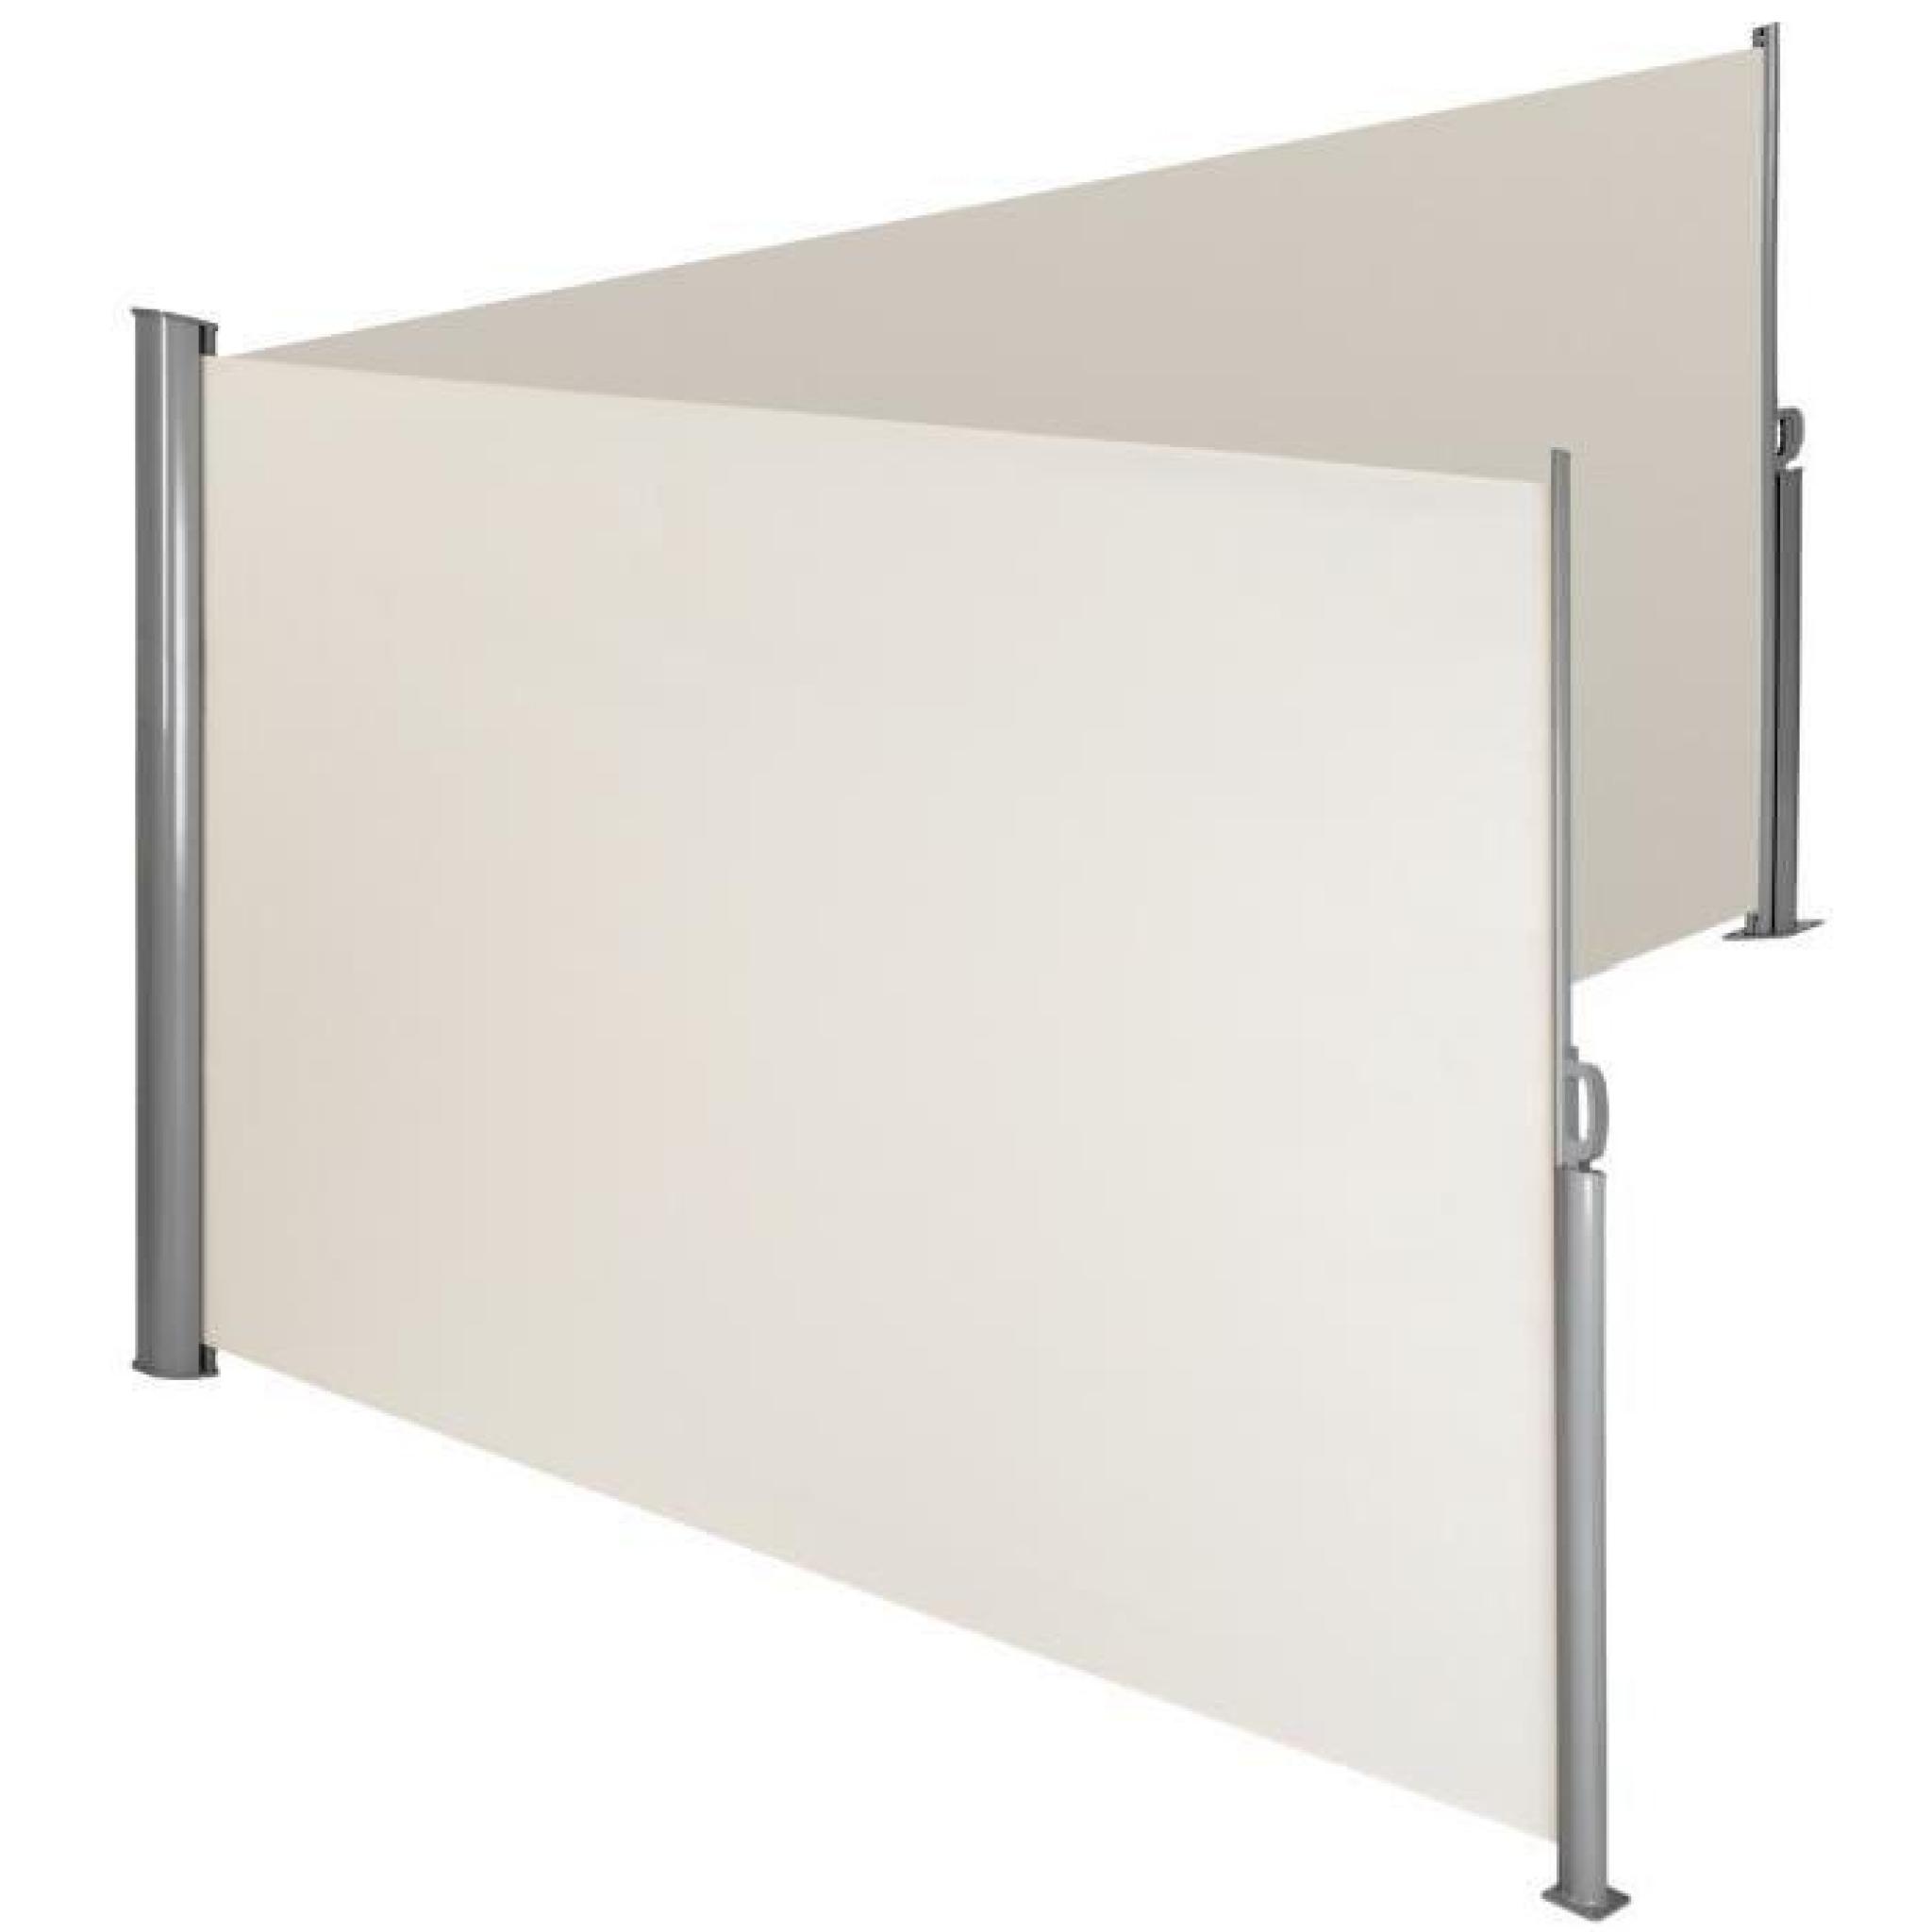 TecTake Store latéral double brise-vue abri soleil aluminium rétractable 180x600cm beige 